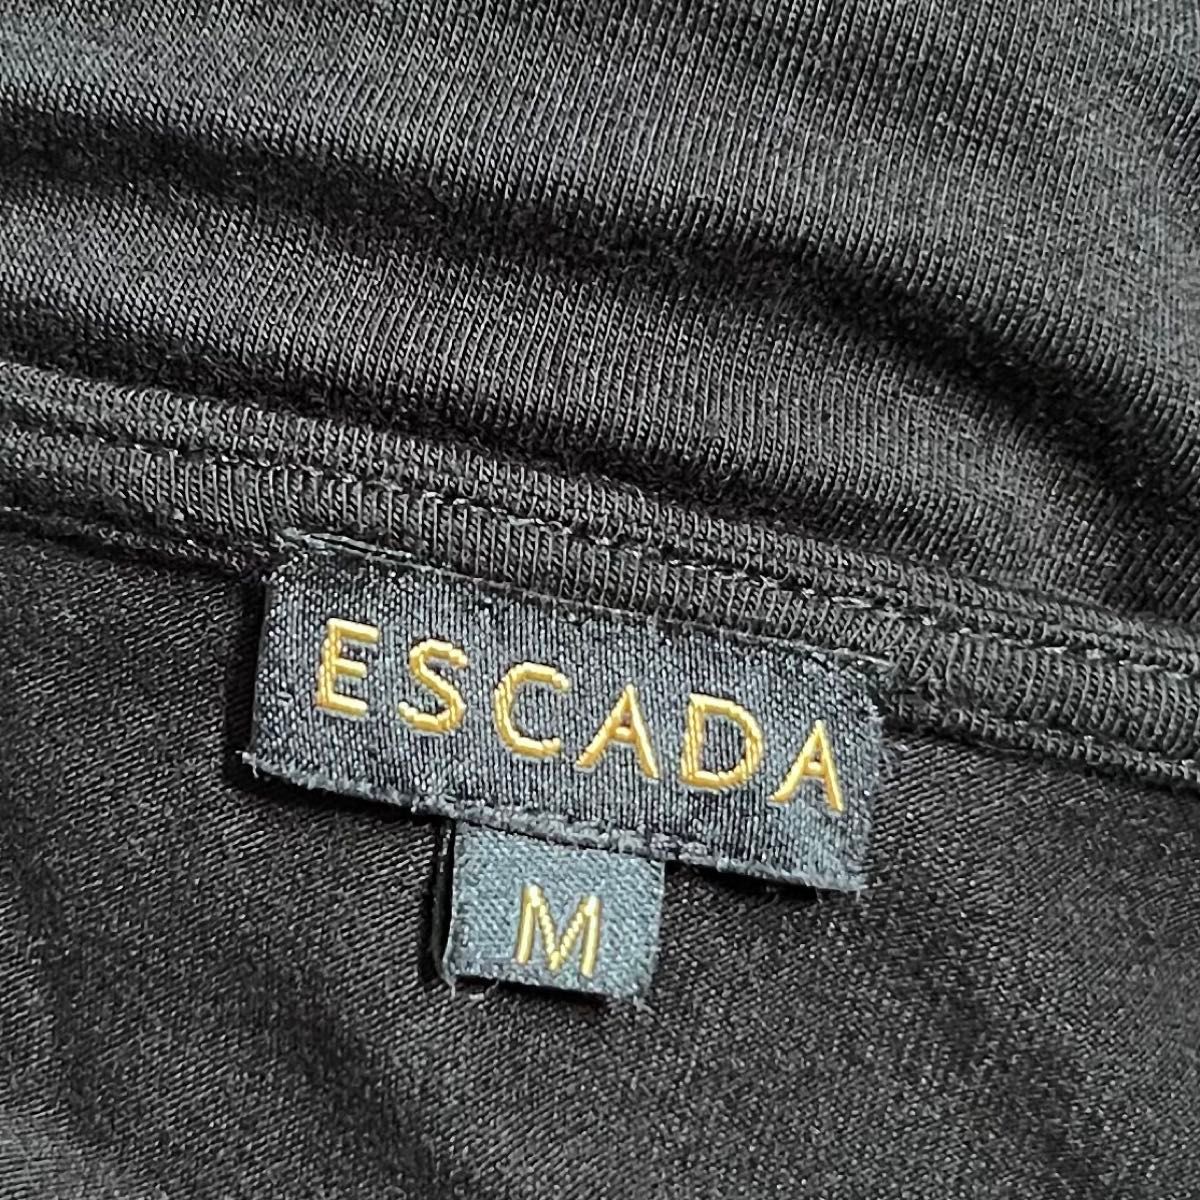 ESCADA/エスカーダ ドルマンストレッチエレガントTシャツ ビジュー 黒 カットソー 半袖